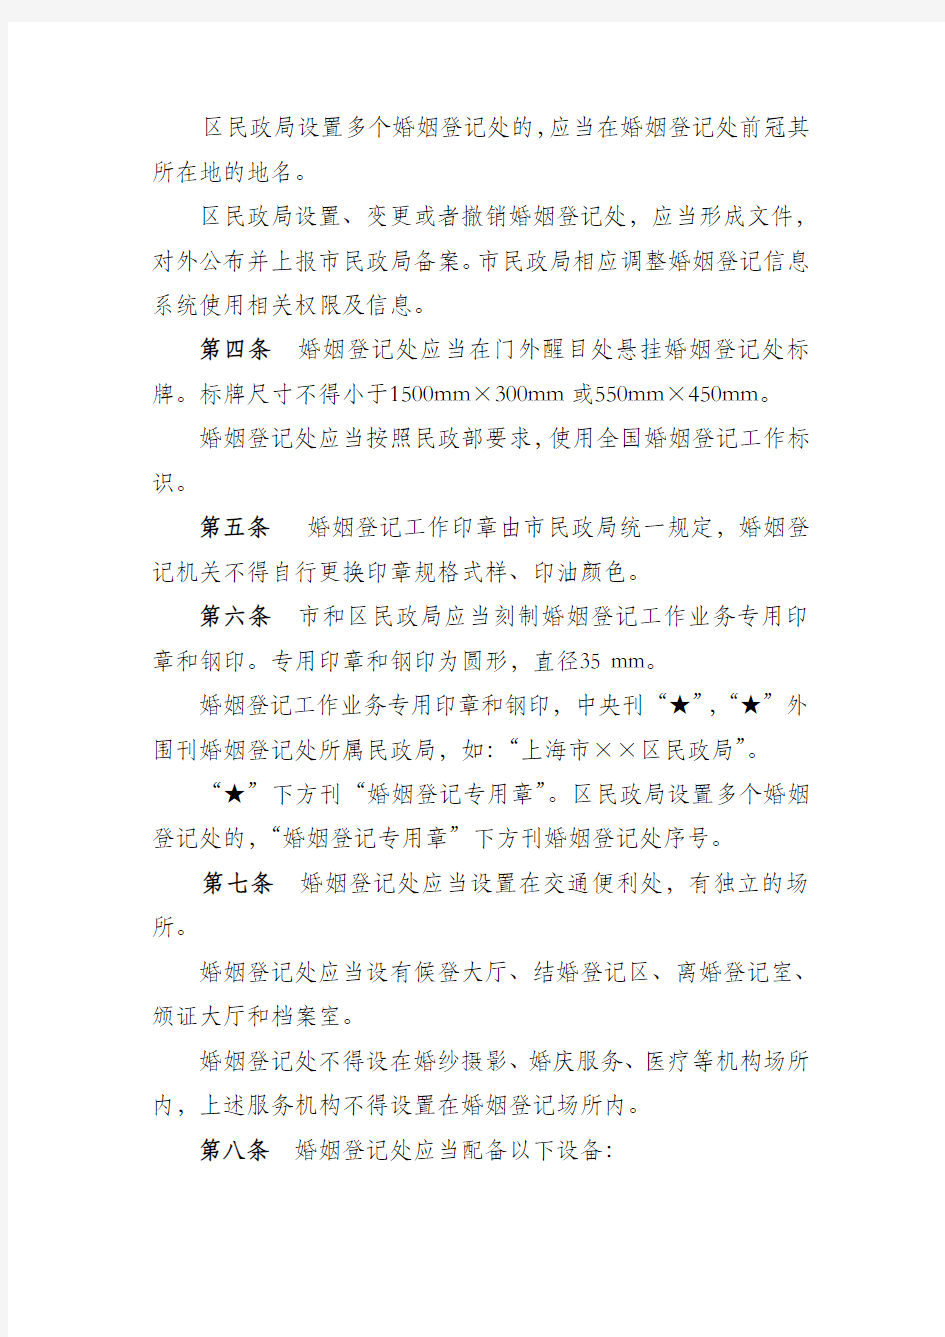 上海市婚姻登记管理工作指引